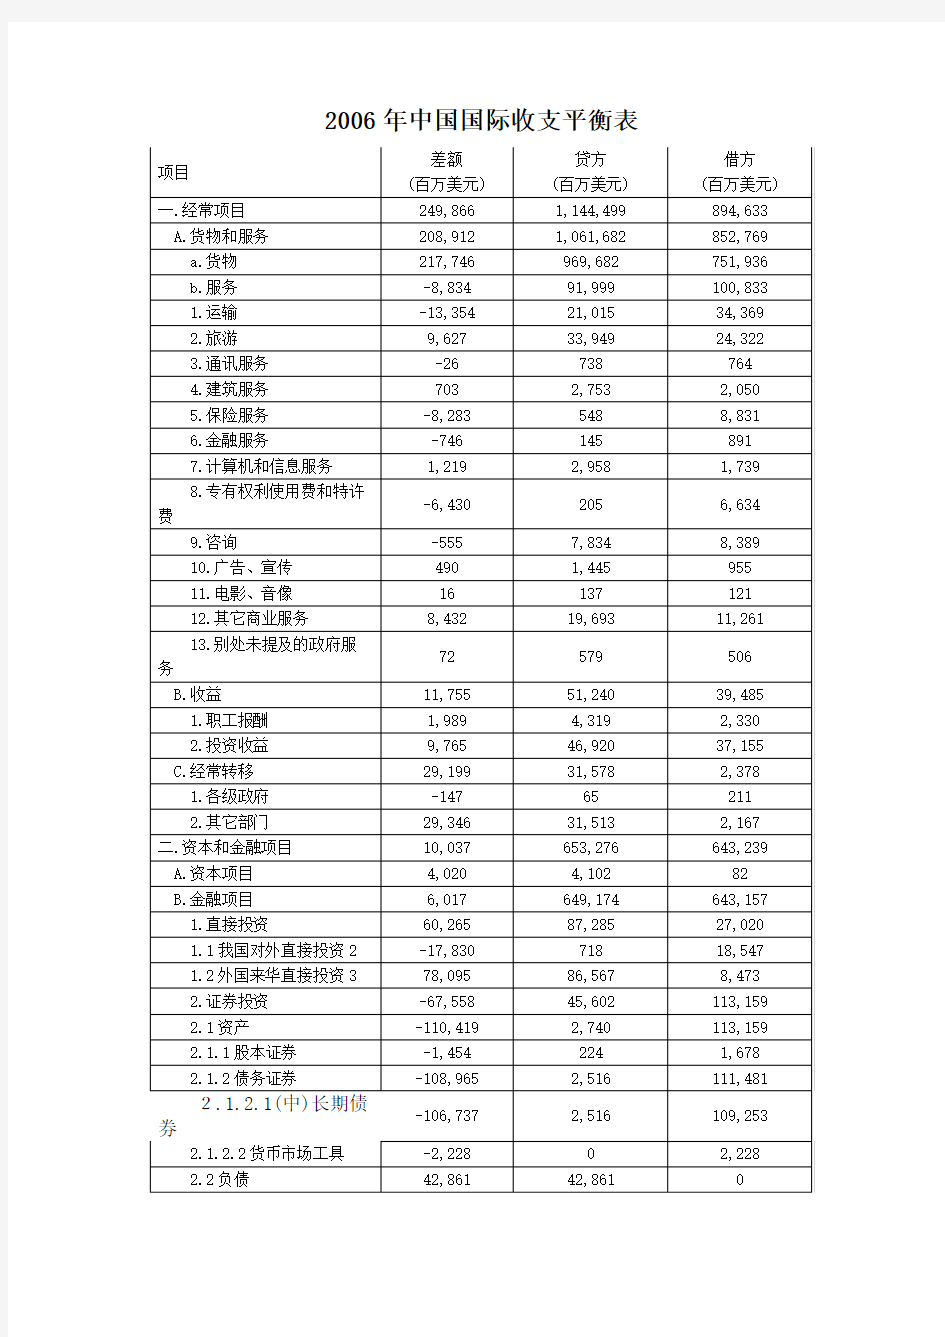 分析中国国际收支平衡表